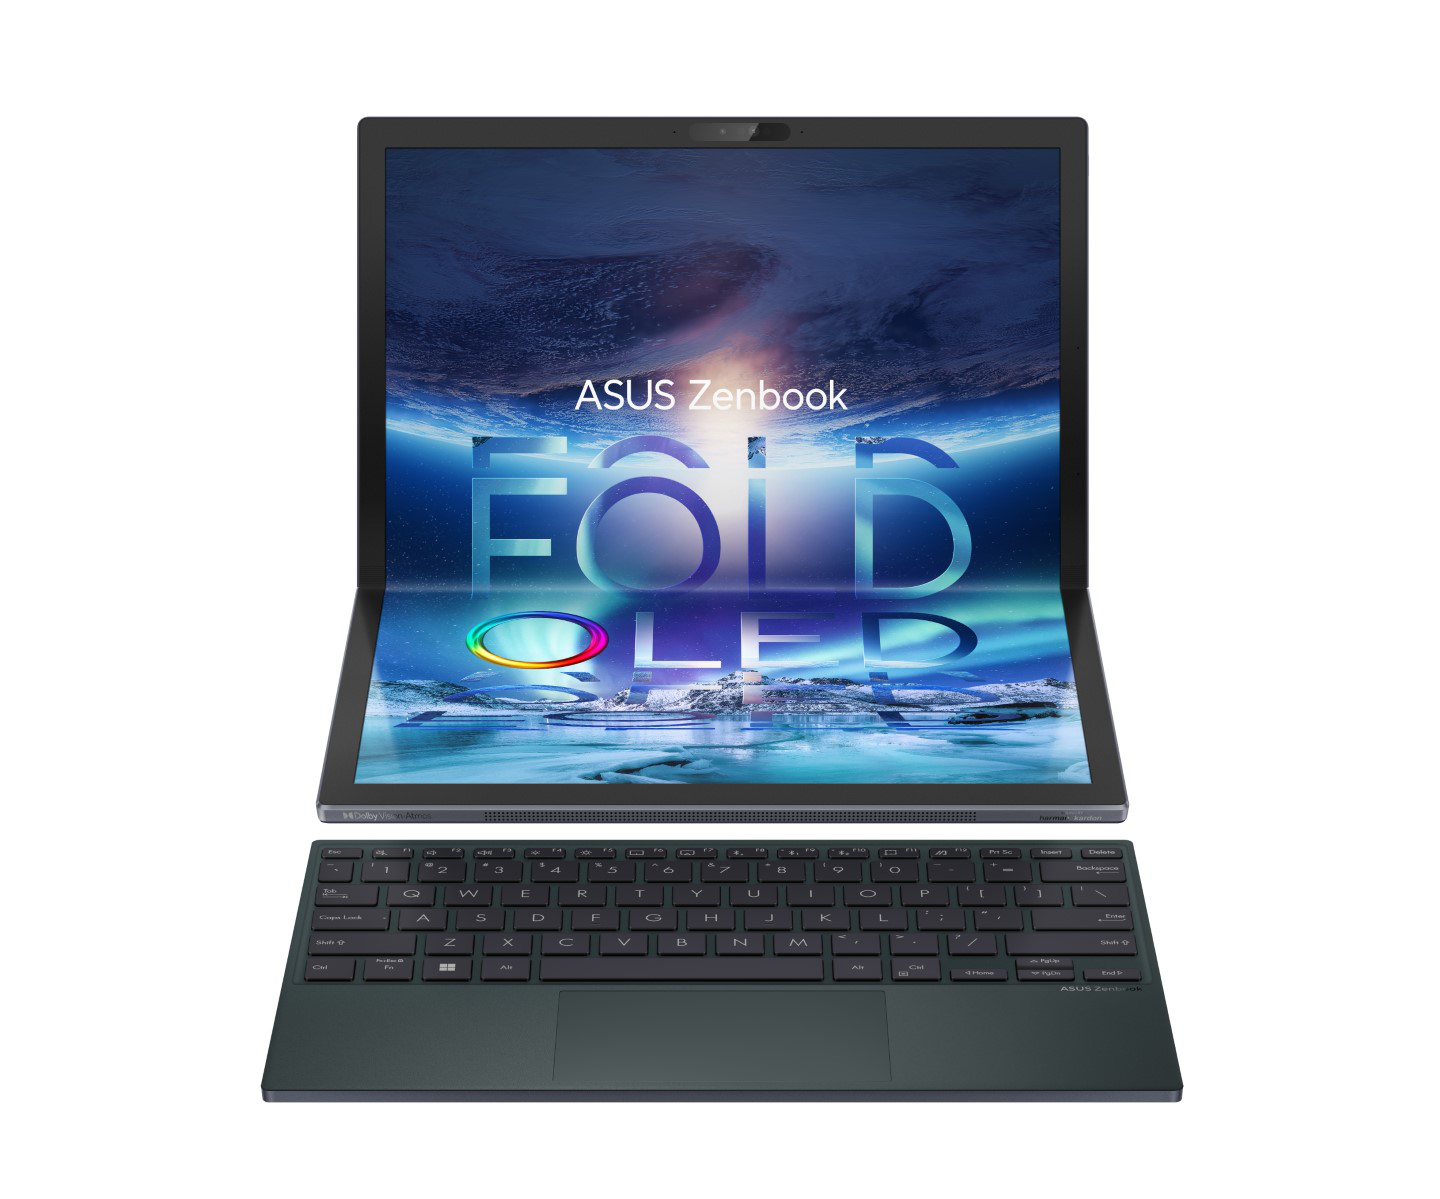 ASUS Zenbook 17 Fold OLED : Prix et disponibilité annoncés pour  l'ordinateur portable OLED pliable de 17,3 pouces -  News